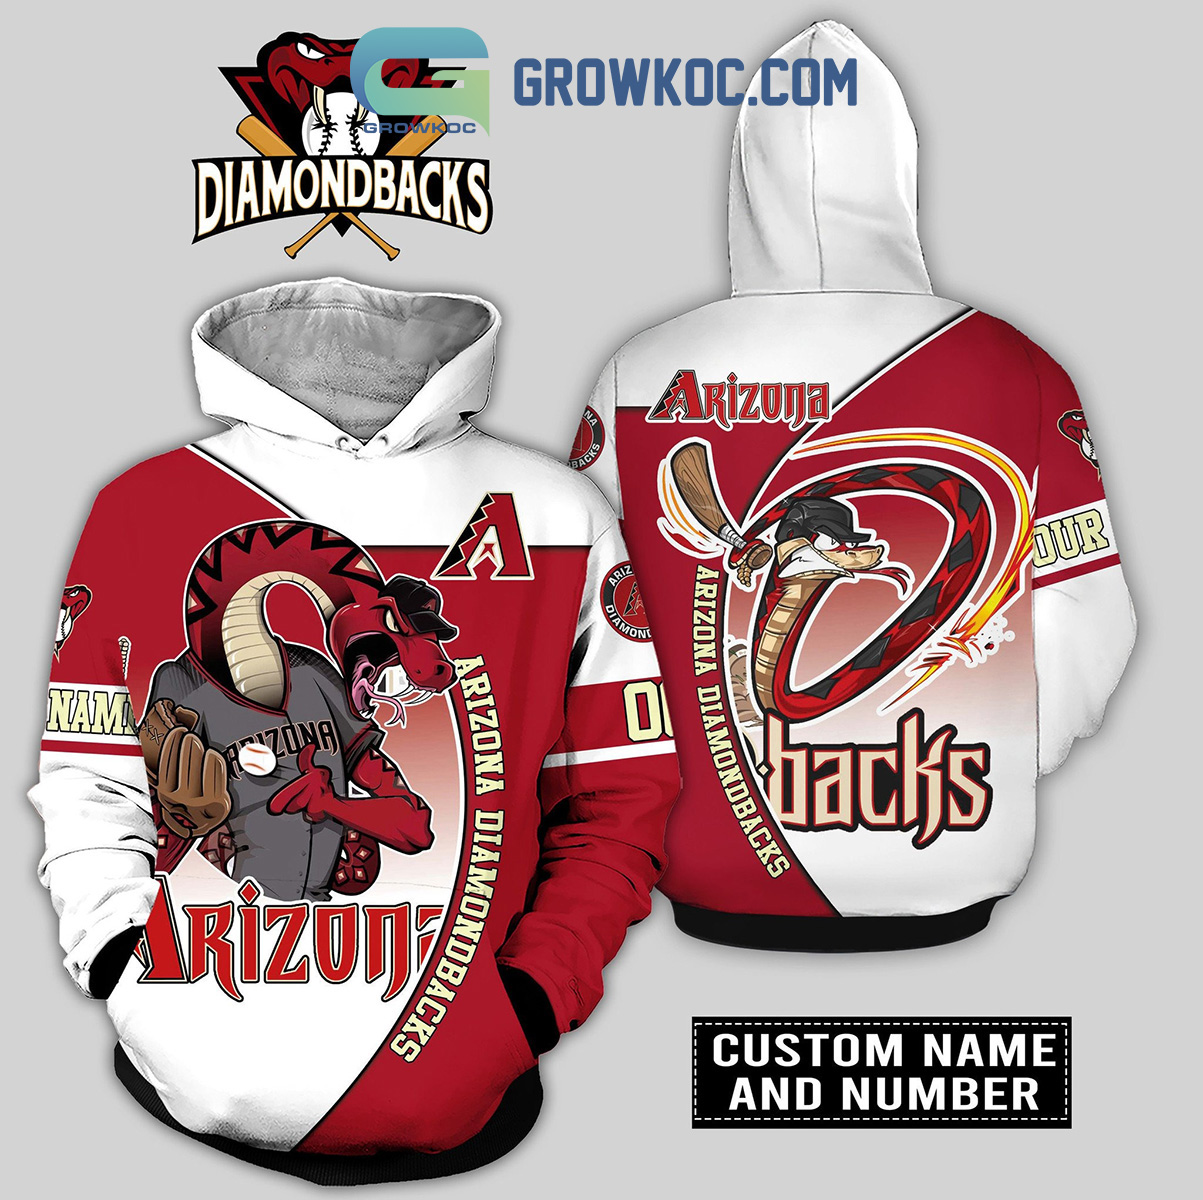 What is the Arizona Diamondbacks mascot?